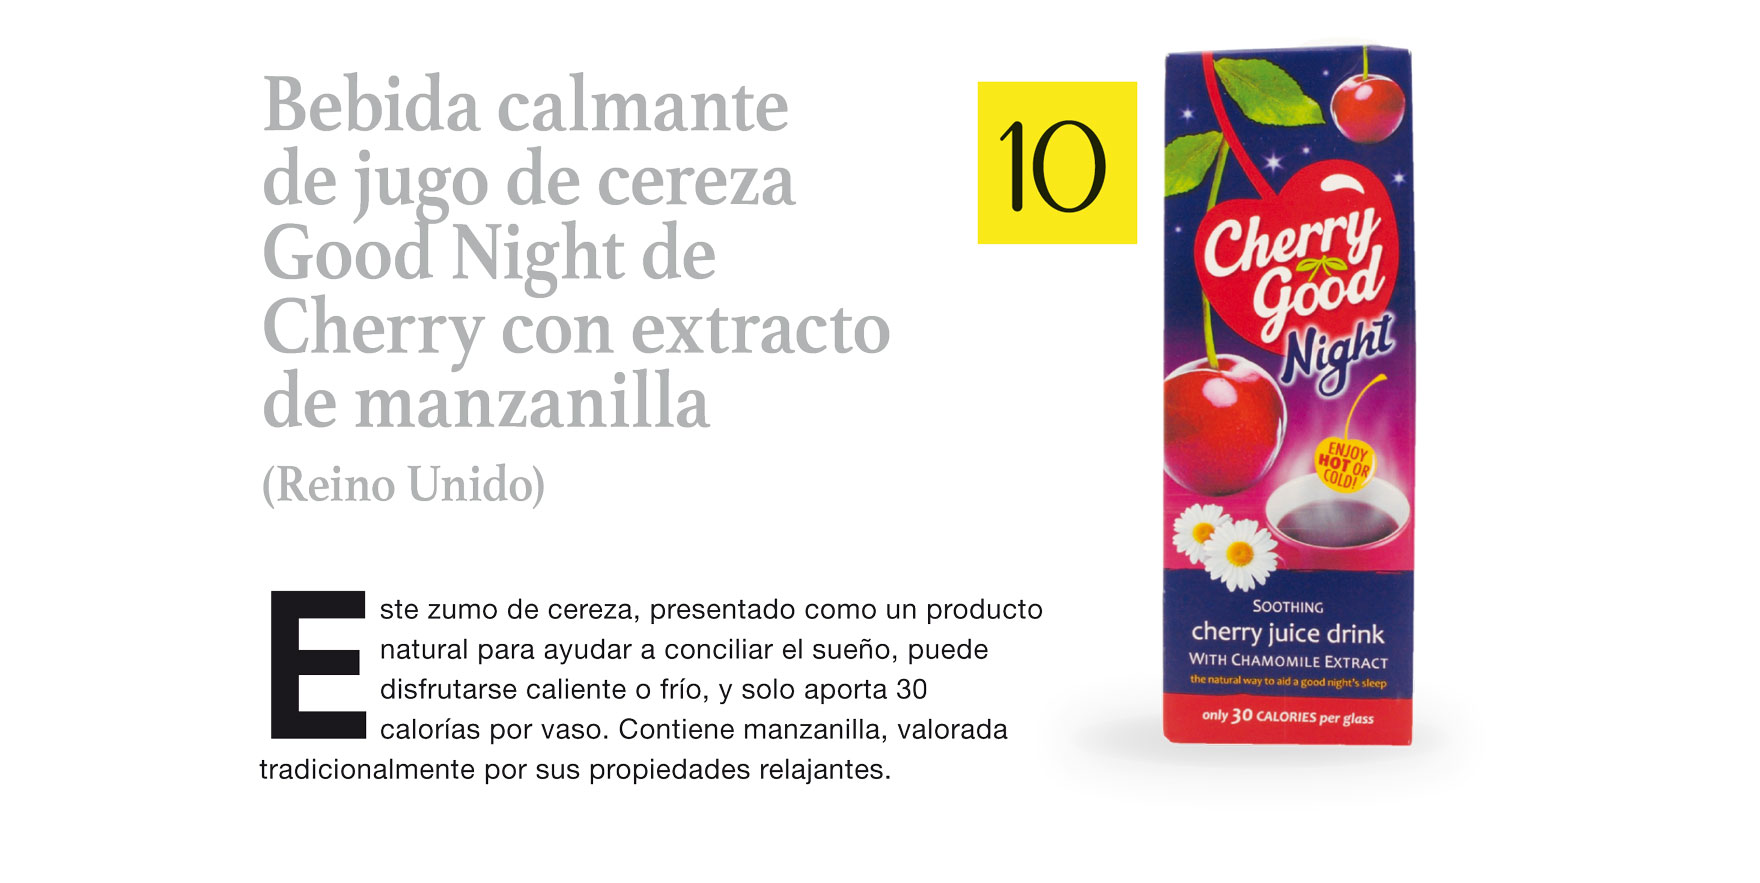 Bebida calmante de jugo de cereza Good Night de Cherry con extracto de manzanilla (Reino Unido)